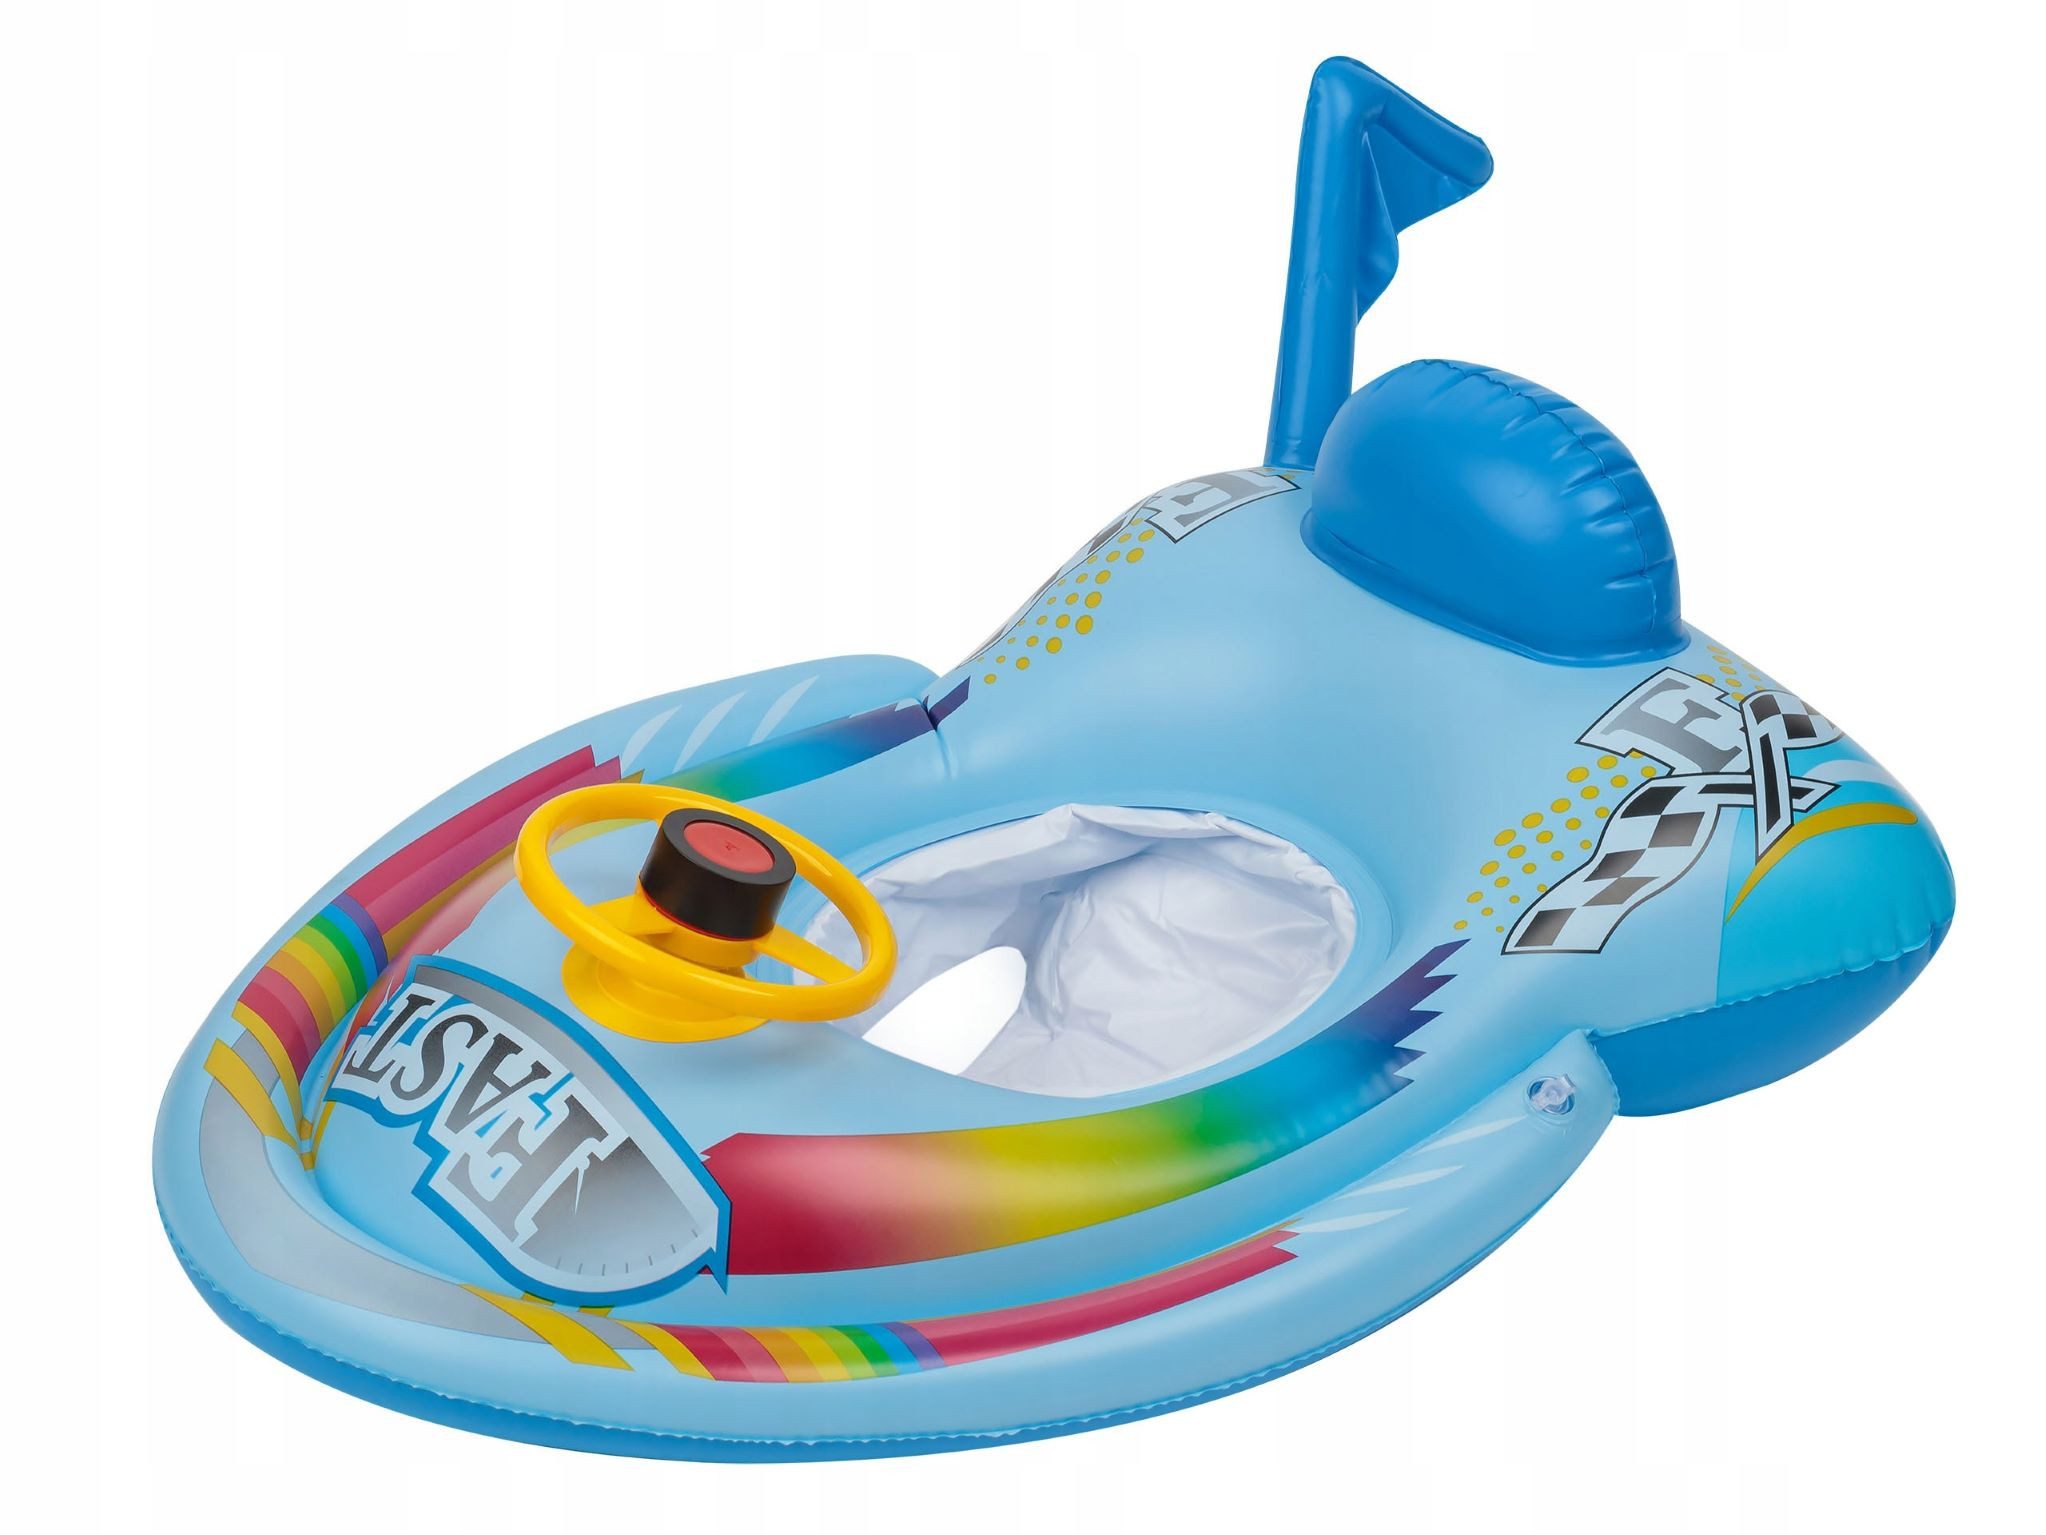 Festivalartikel Badeanzug Aufblasbares Motorboot-Schwimmring für Kinder mit Sitz, Lenkrad, Hupe